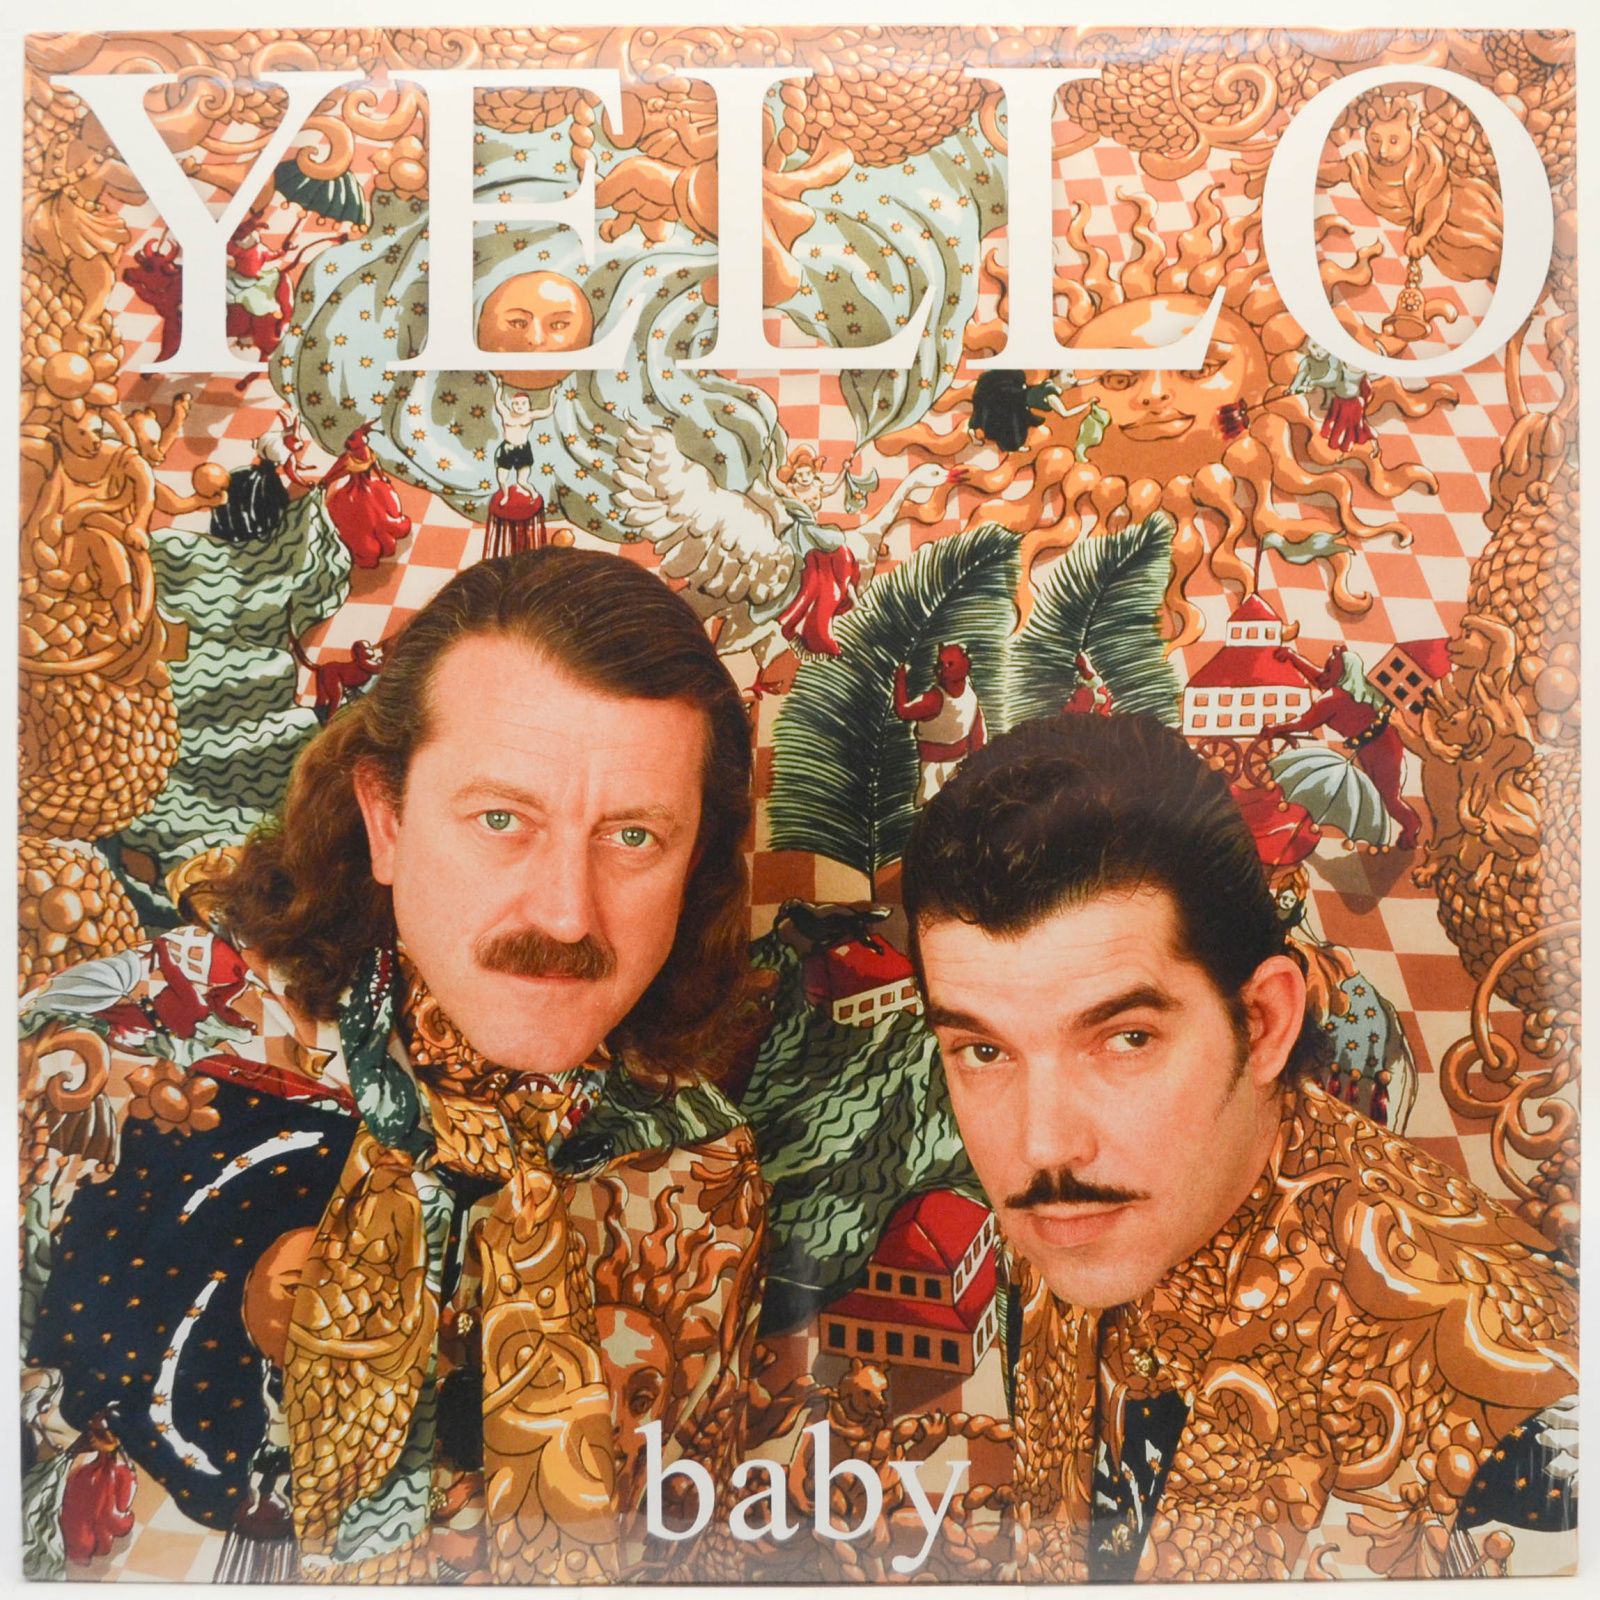 Yello — Baby, 1991